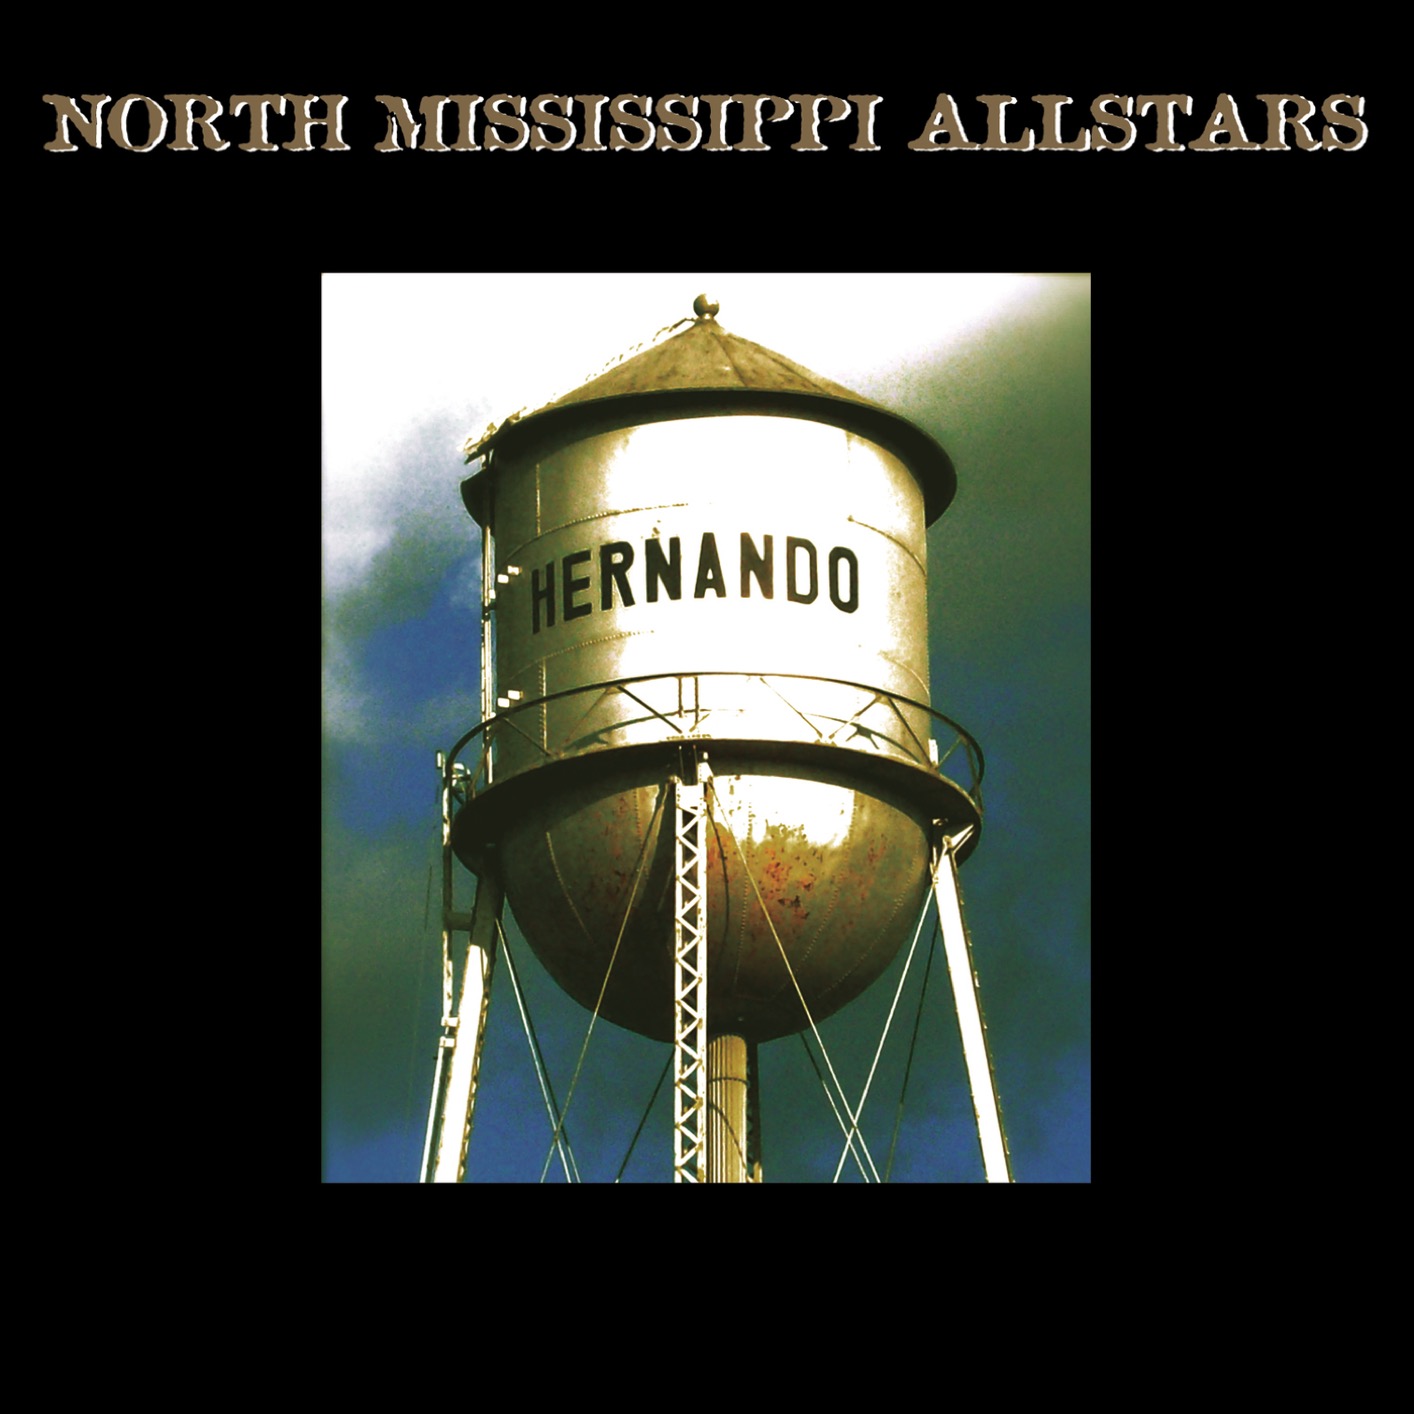 North Mississippi Allstars - Hernando (2008/2017) [FLAC 24bit/44,1kHz]